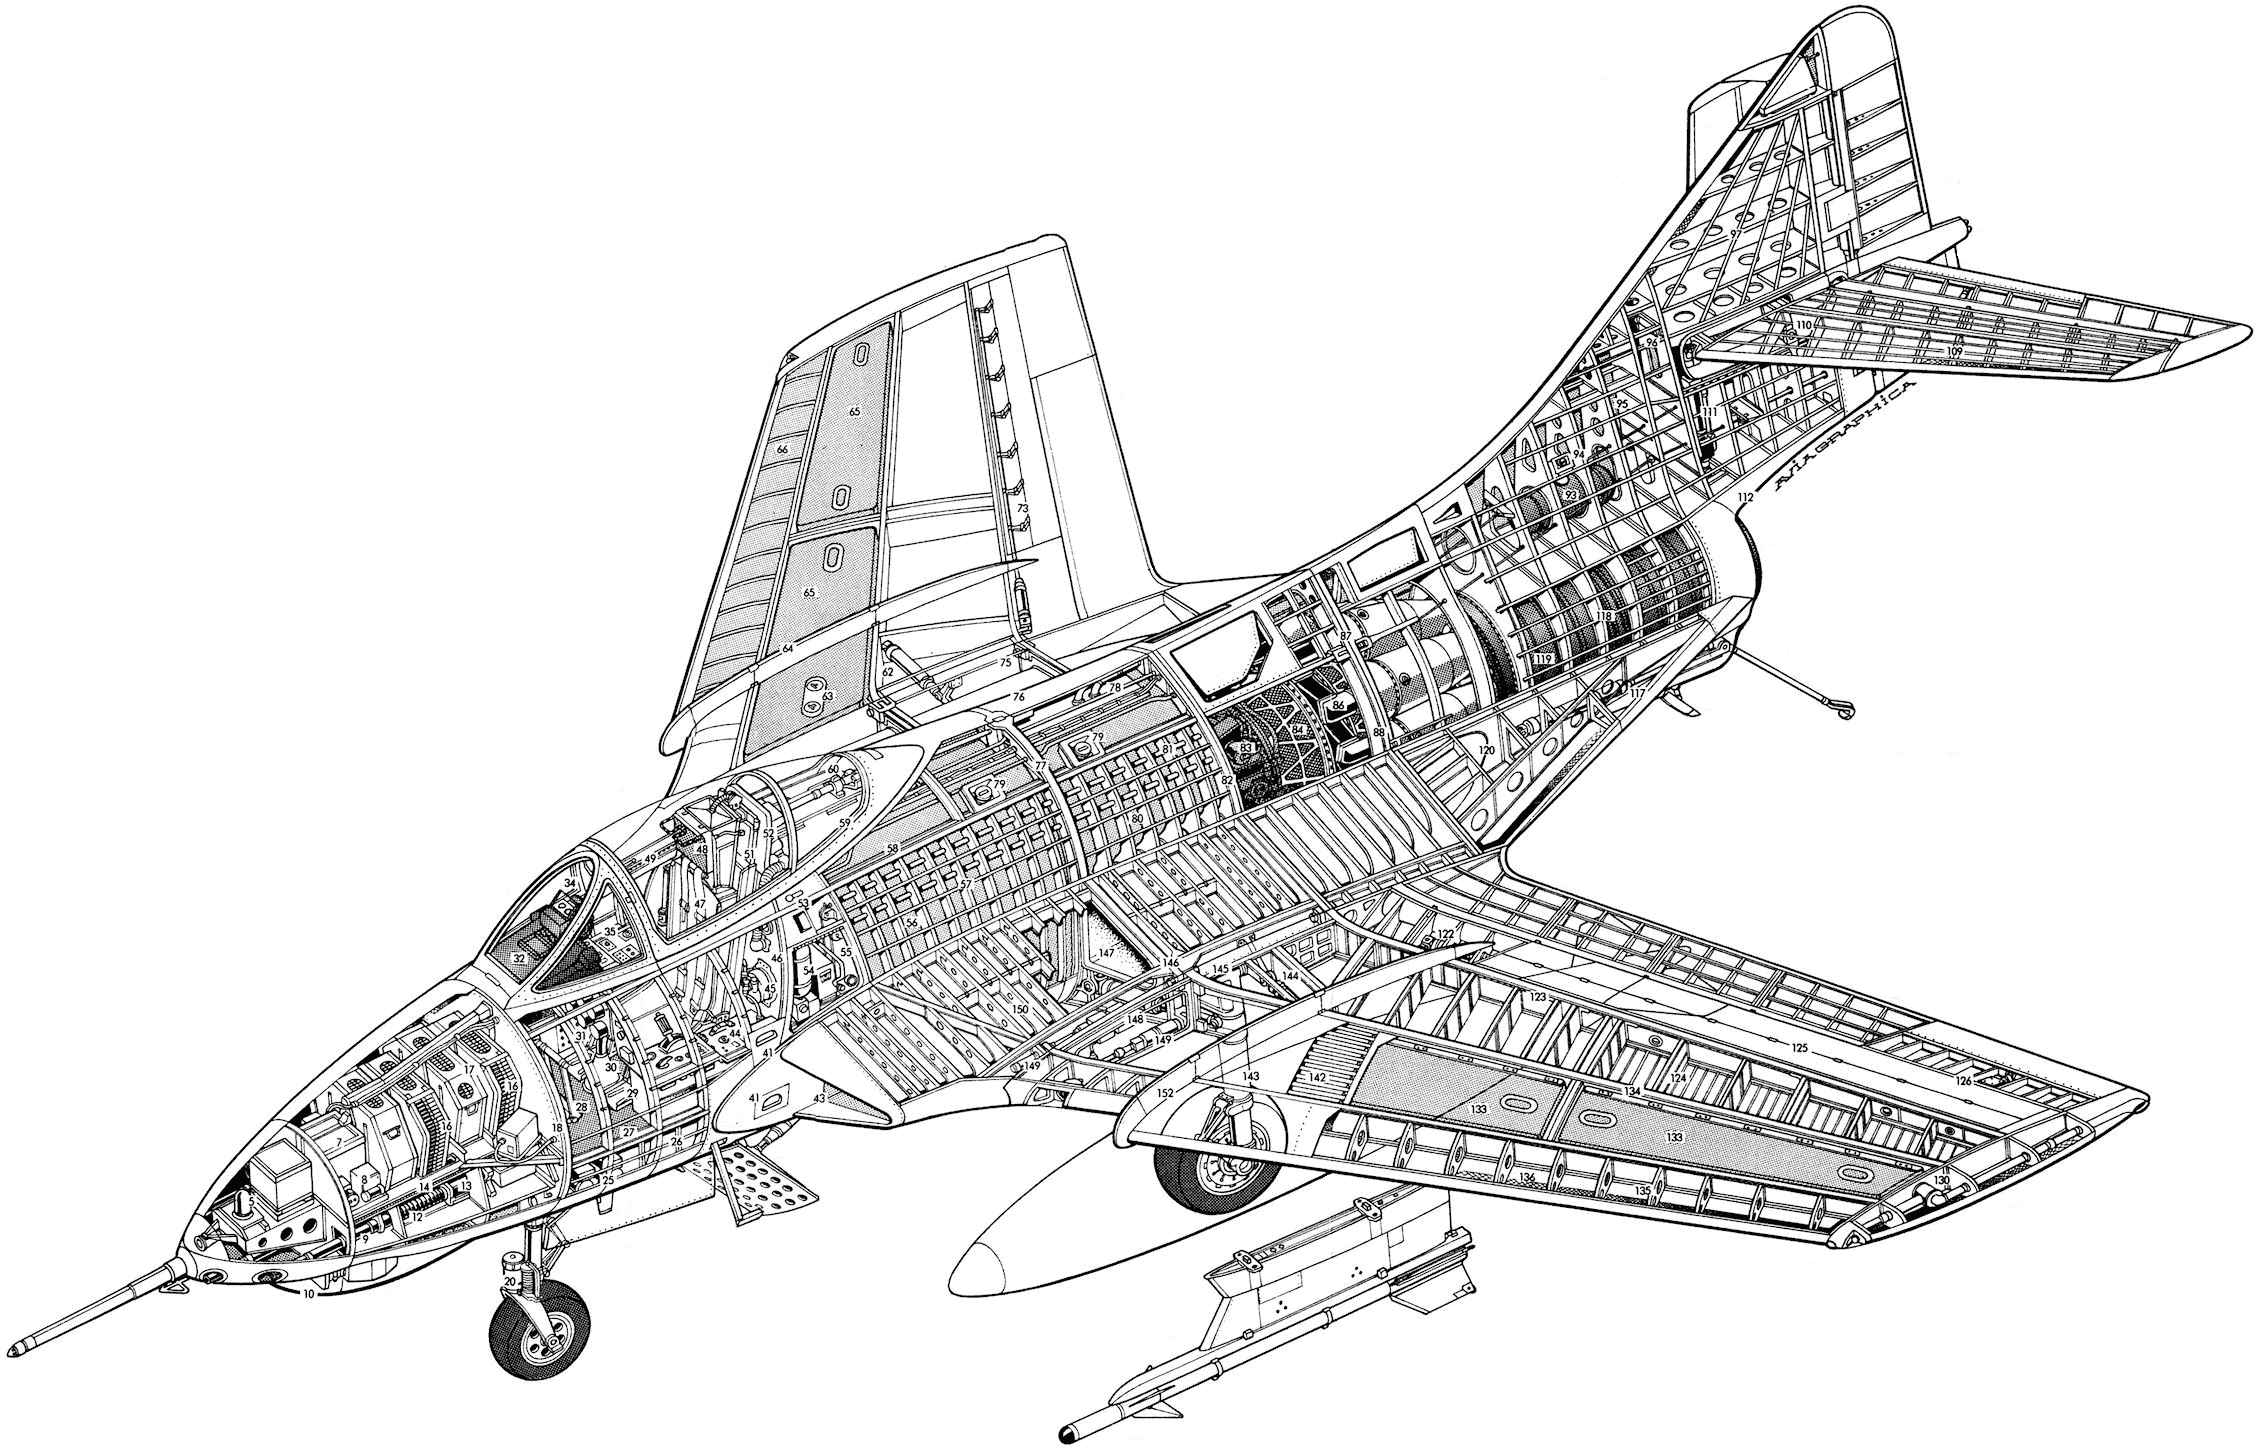 Grumman F-9 Cougar cutaway